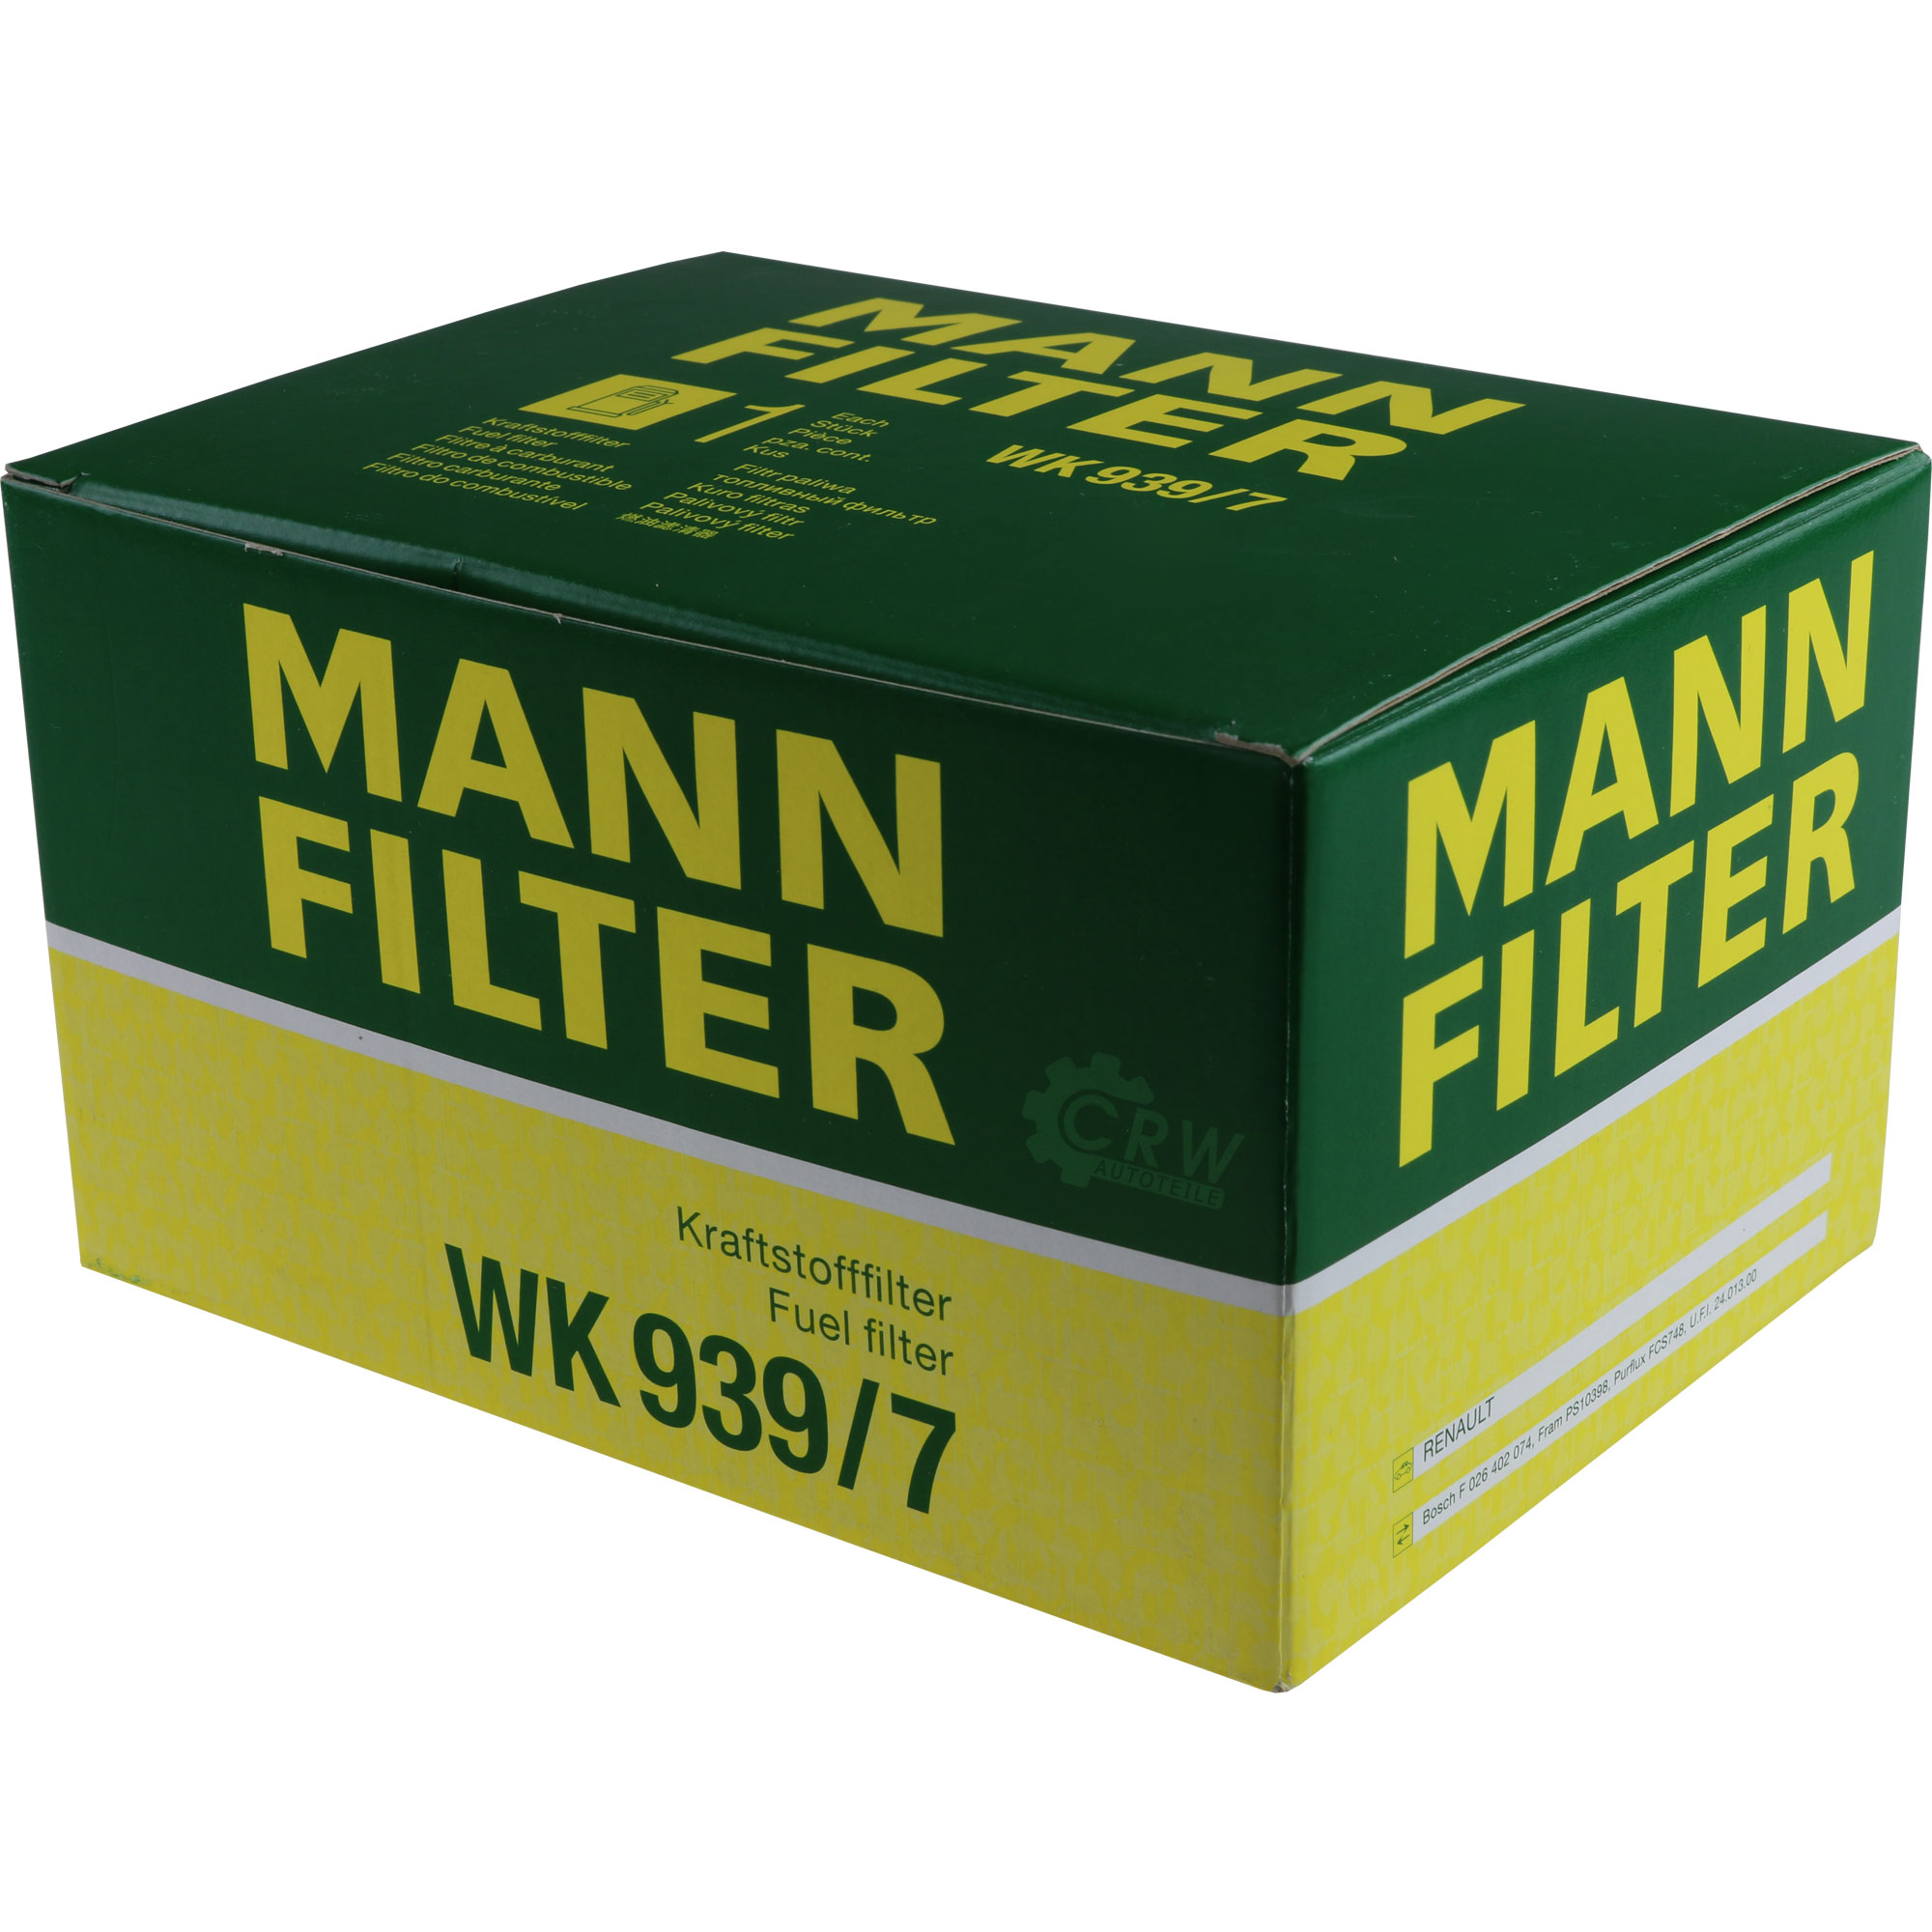 MANN-FILTER Kraftstofffilter WK 939/7 Fuel Filter